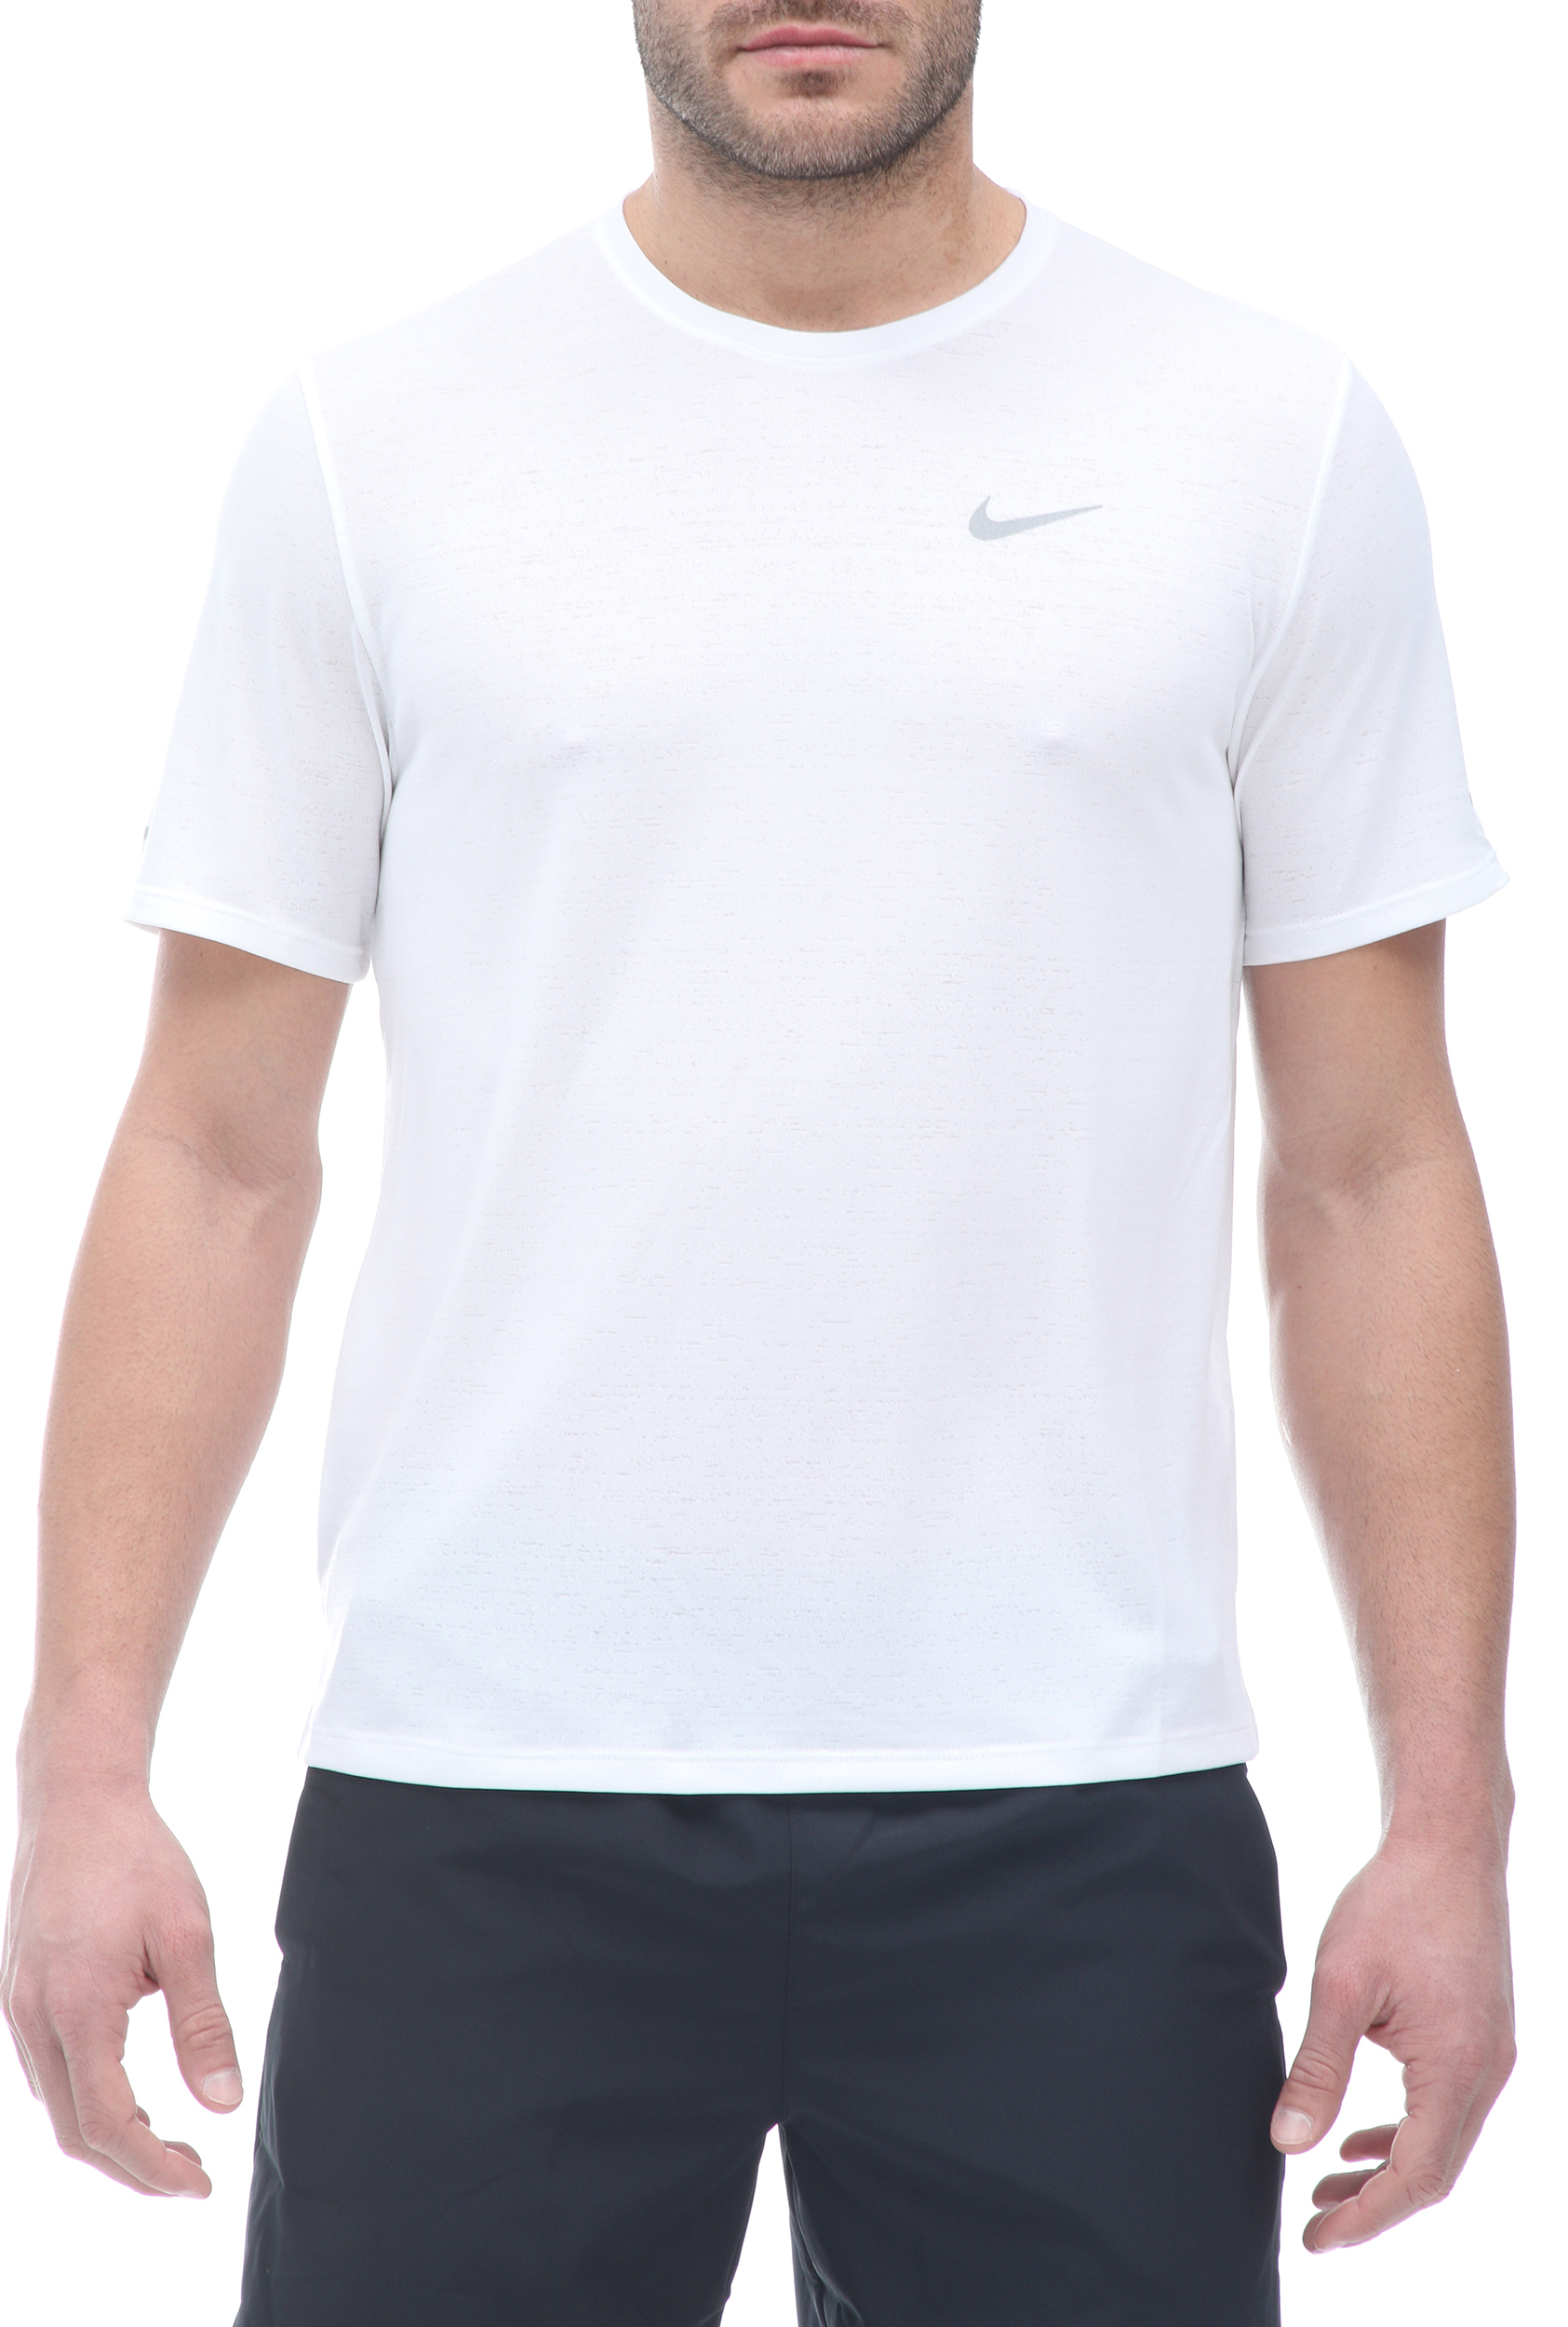 Ανδρικά/Ρούχα/Αθλητικά/T-shirt NIKE - Ανδρική μπλούζα NIKE DF MILER TOP SS λευκή